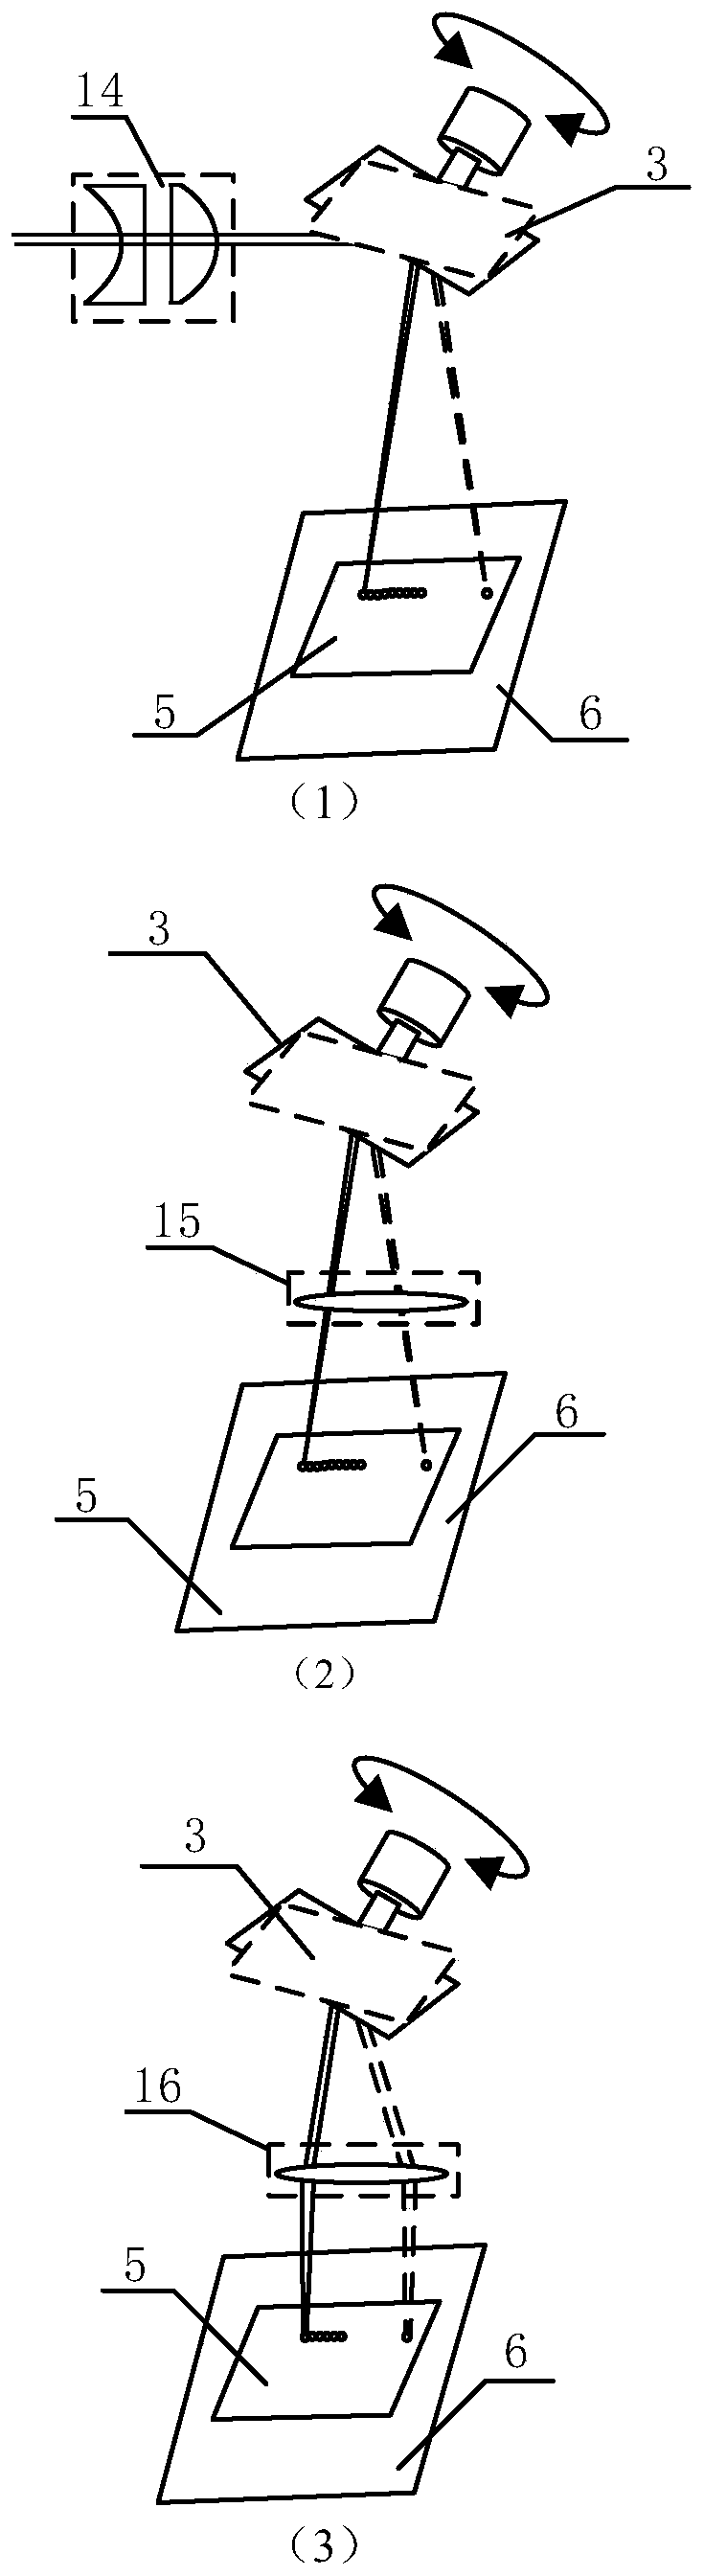 Scanning type laser shock peening device